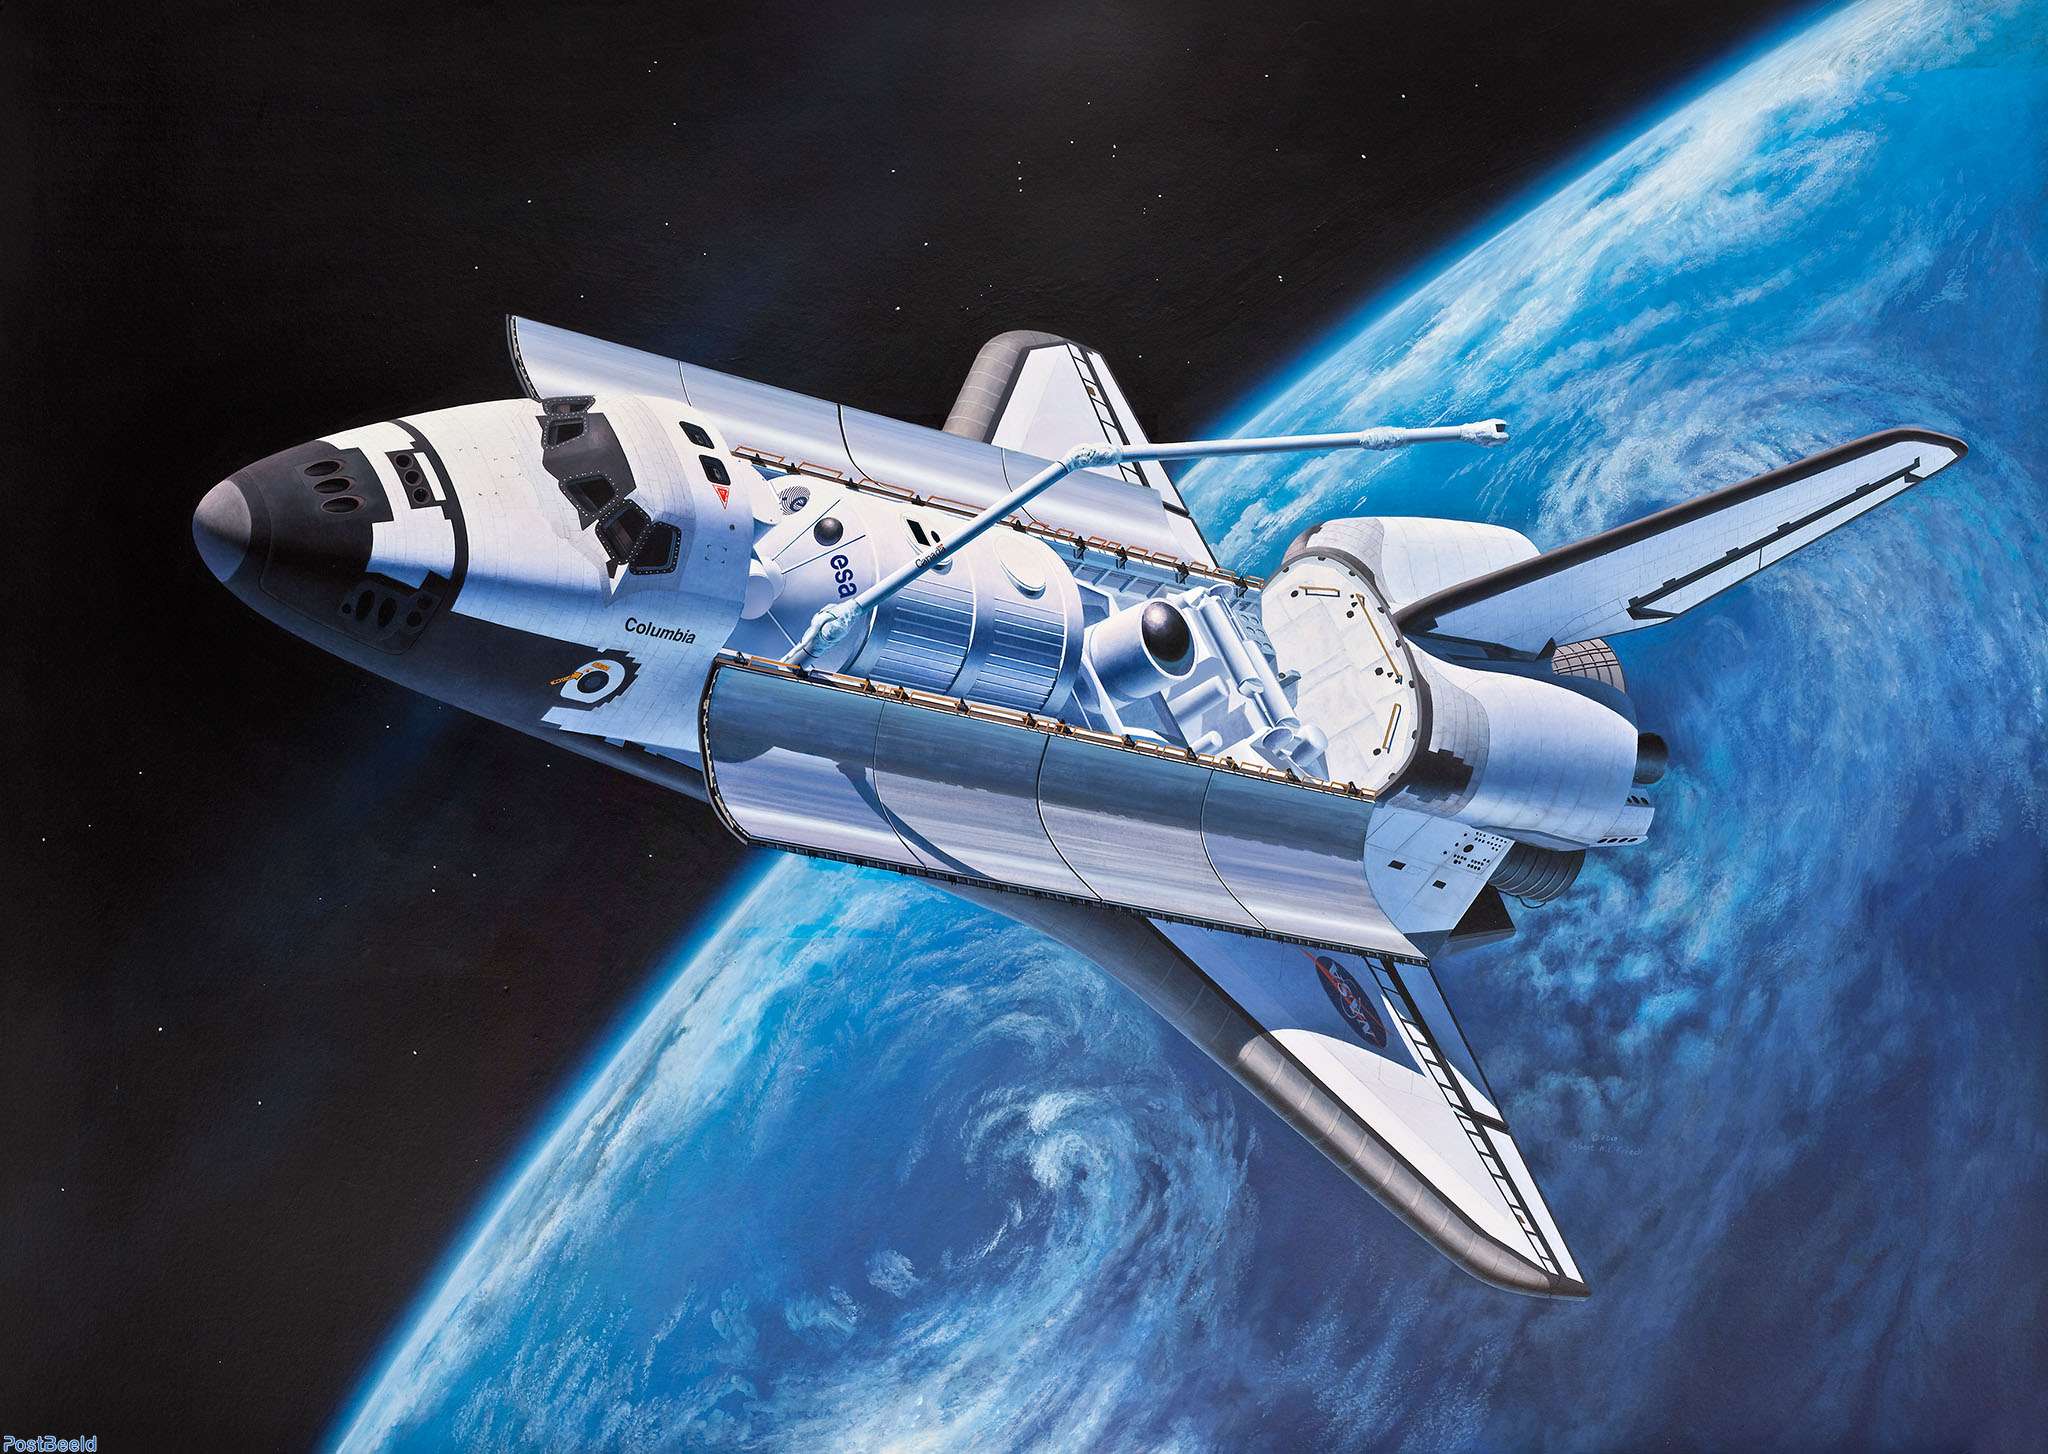 Space Shuttle ~ 40th Anniversary - Briefmarken sammeln - PostBeeld.de - Online Briefmarken kaufen - Sammeln